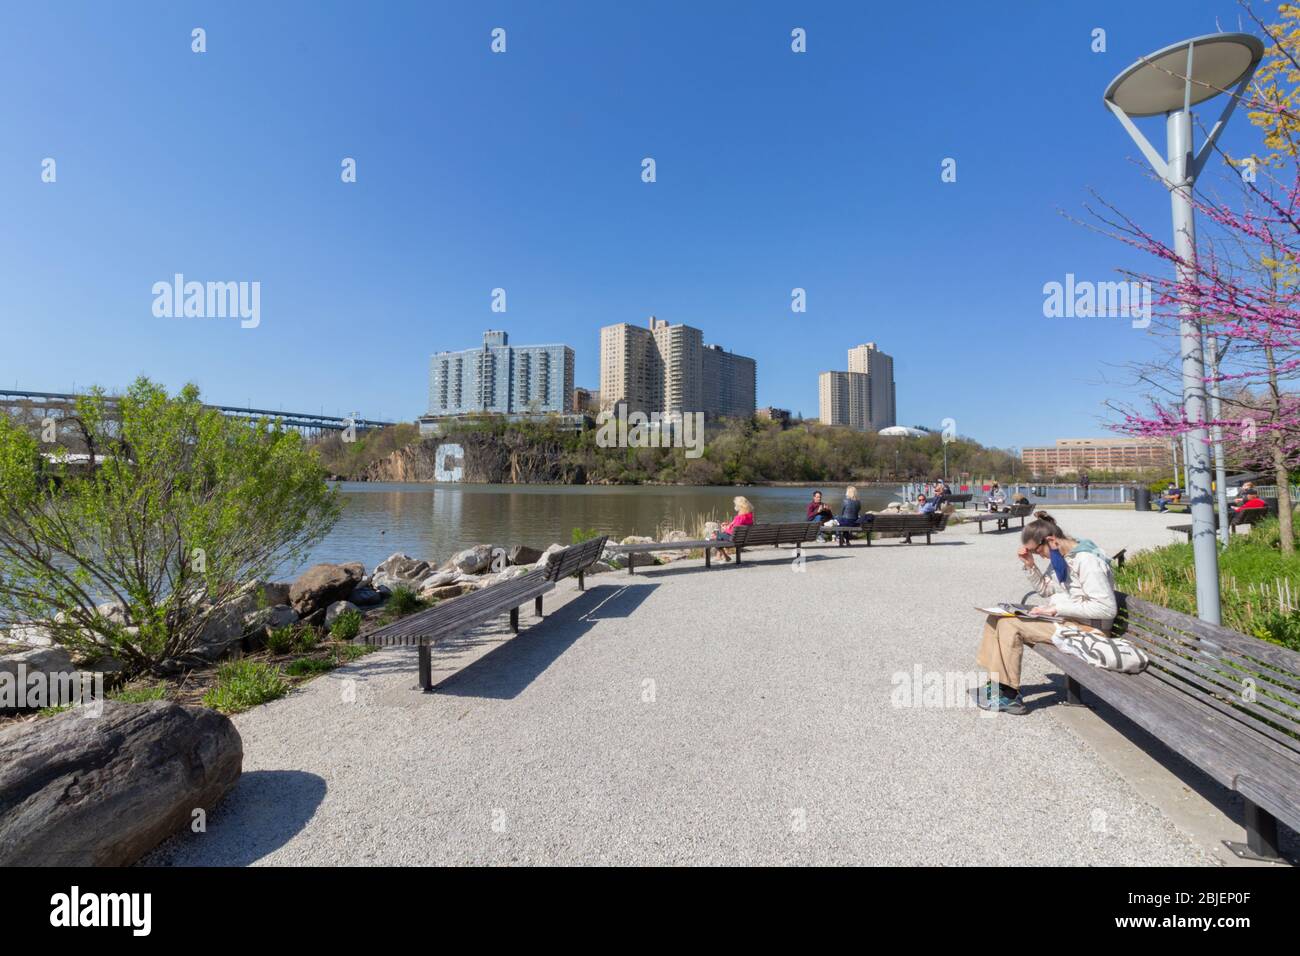 La gente que disfruta de un día soleado durante la pandemia en el parque Muscota Marsh en el río Harlem. Mirando hacia el Bronx Foto de stock